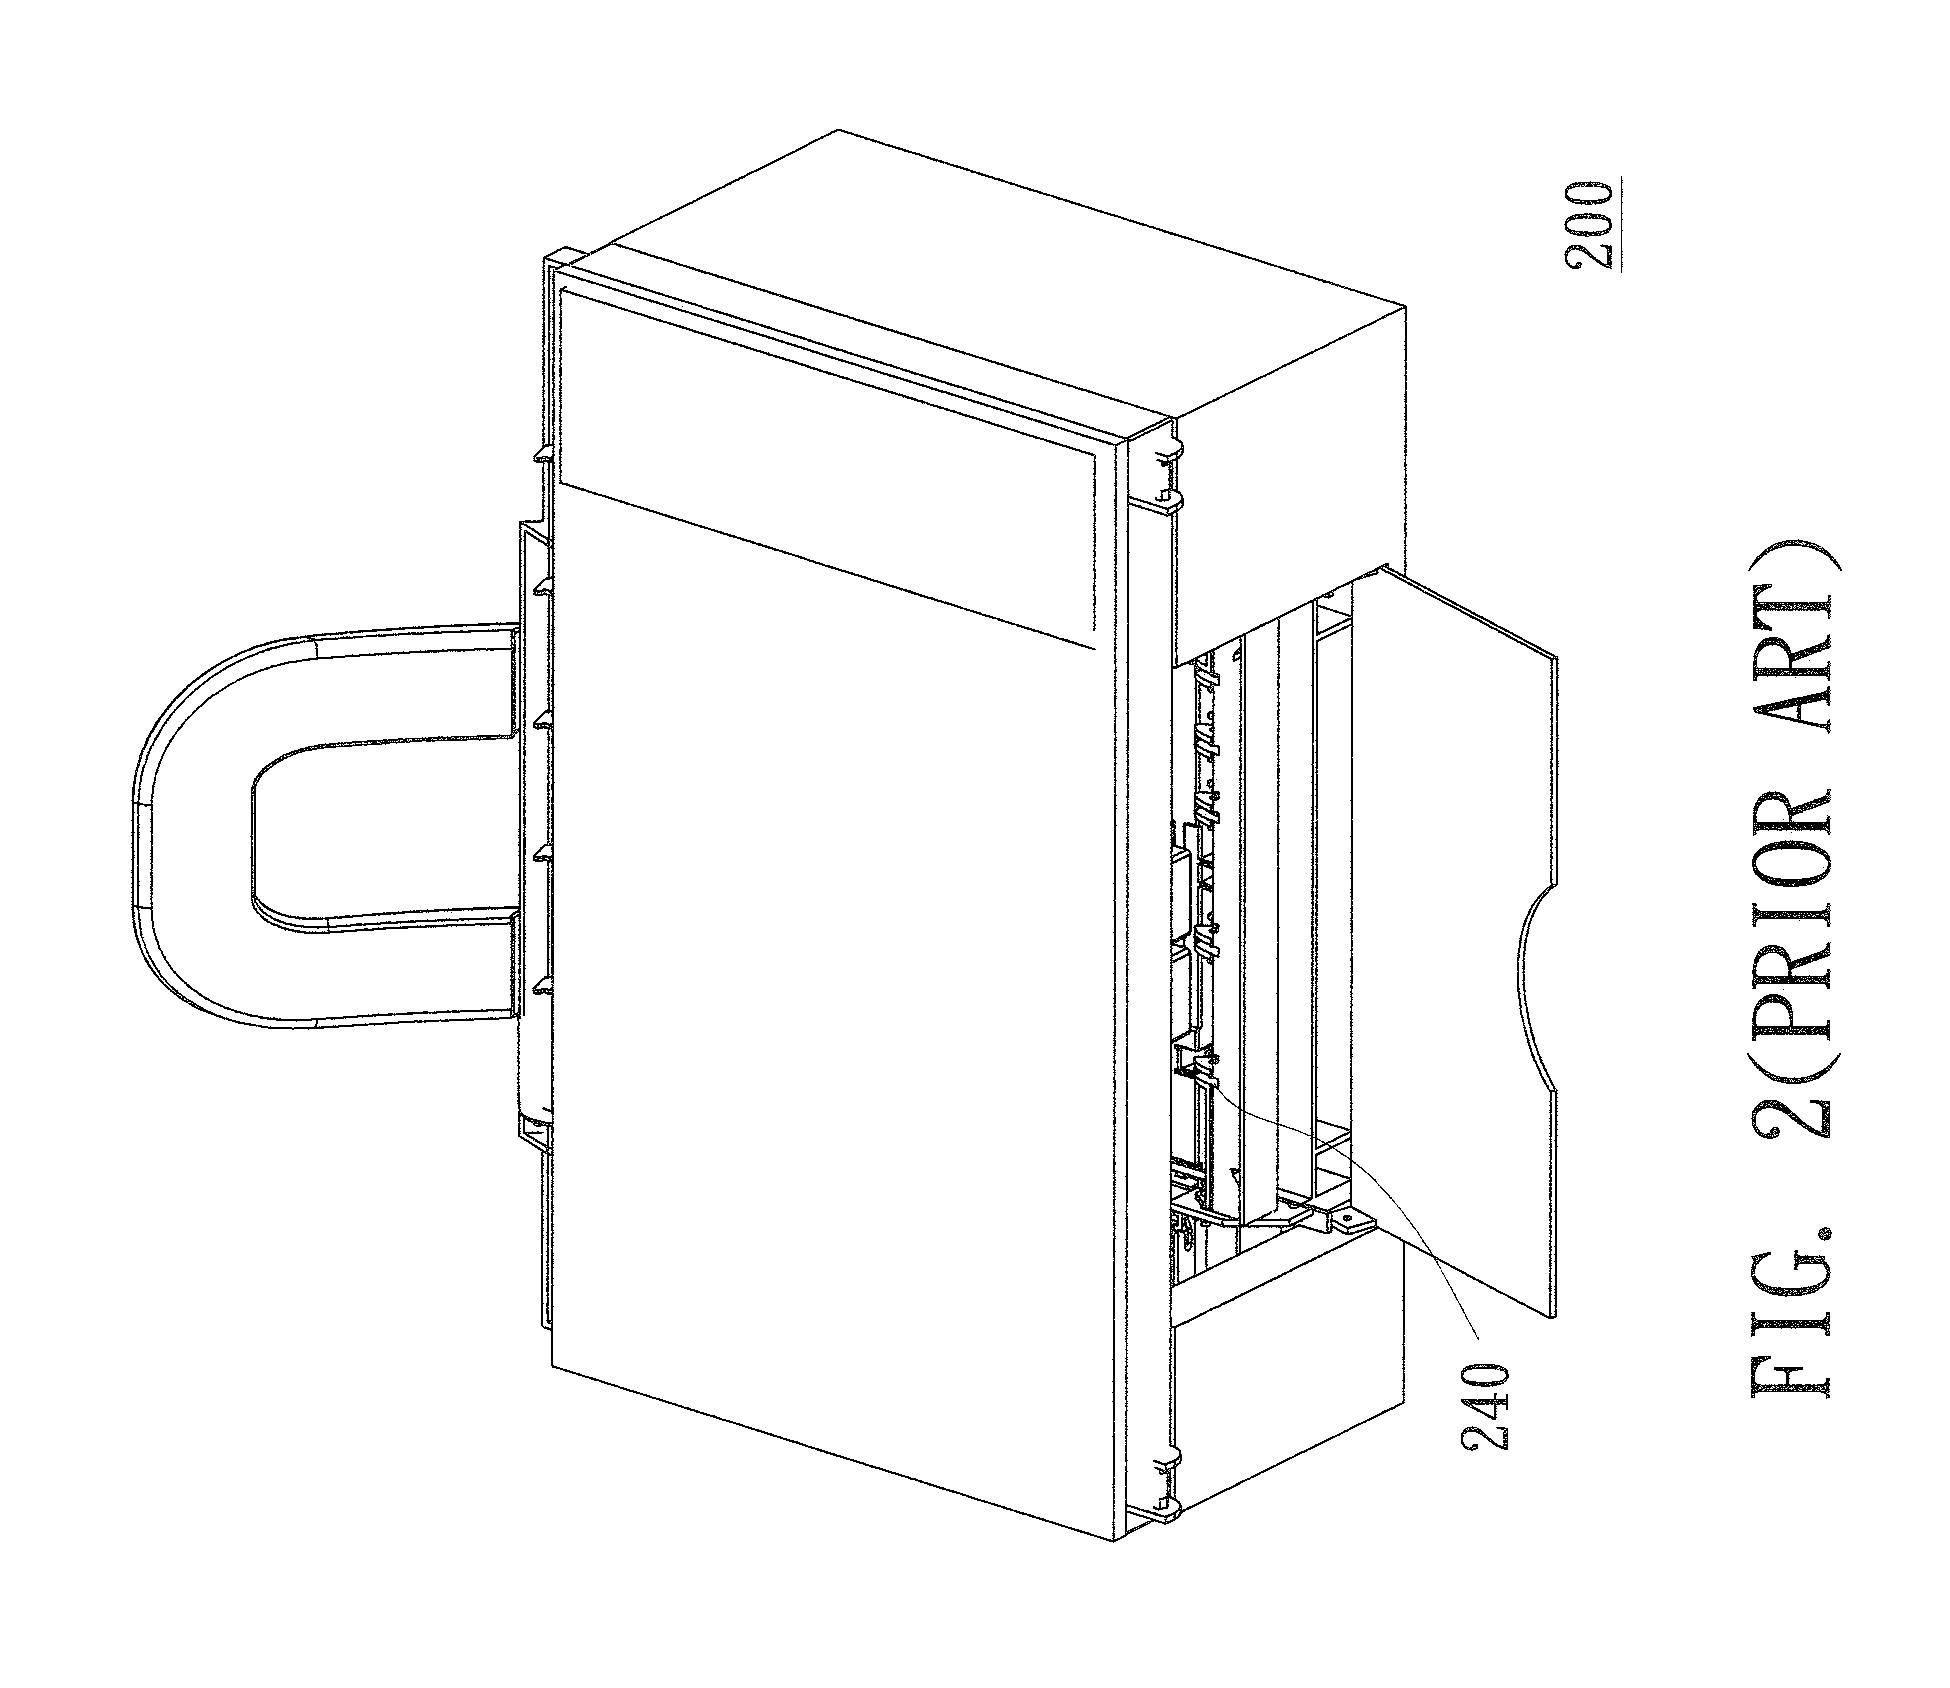 Star wheel releasing mechanism of printing apparatus